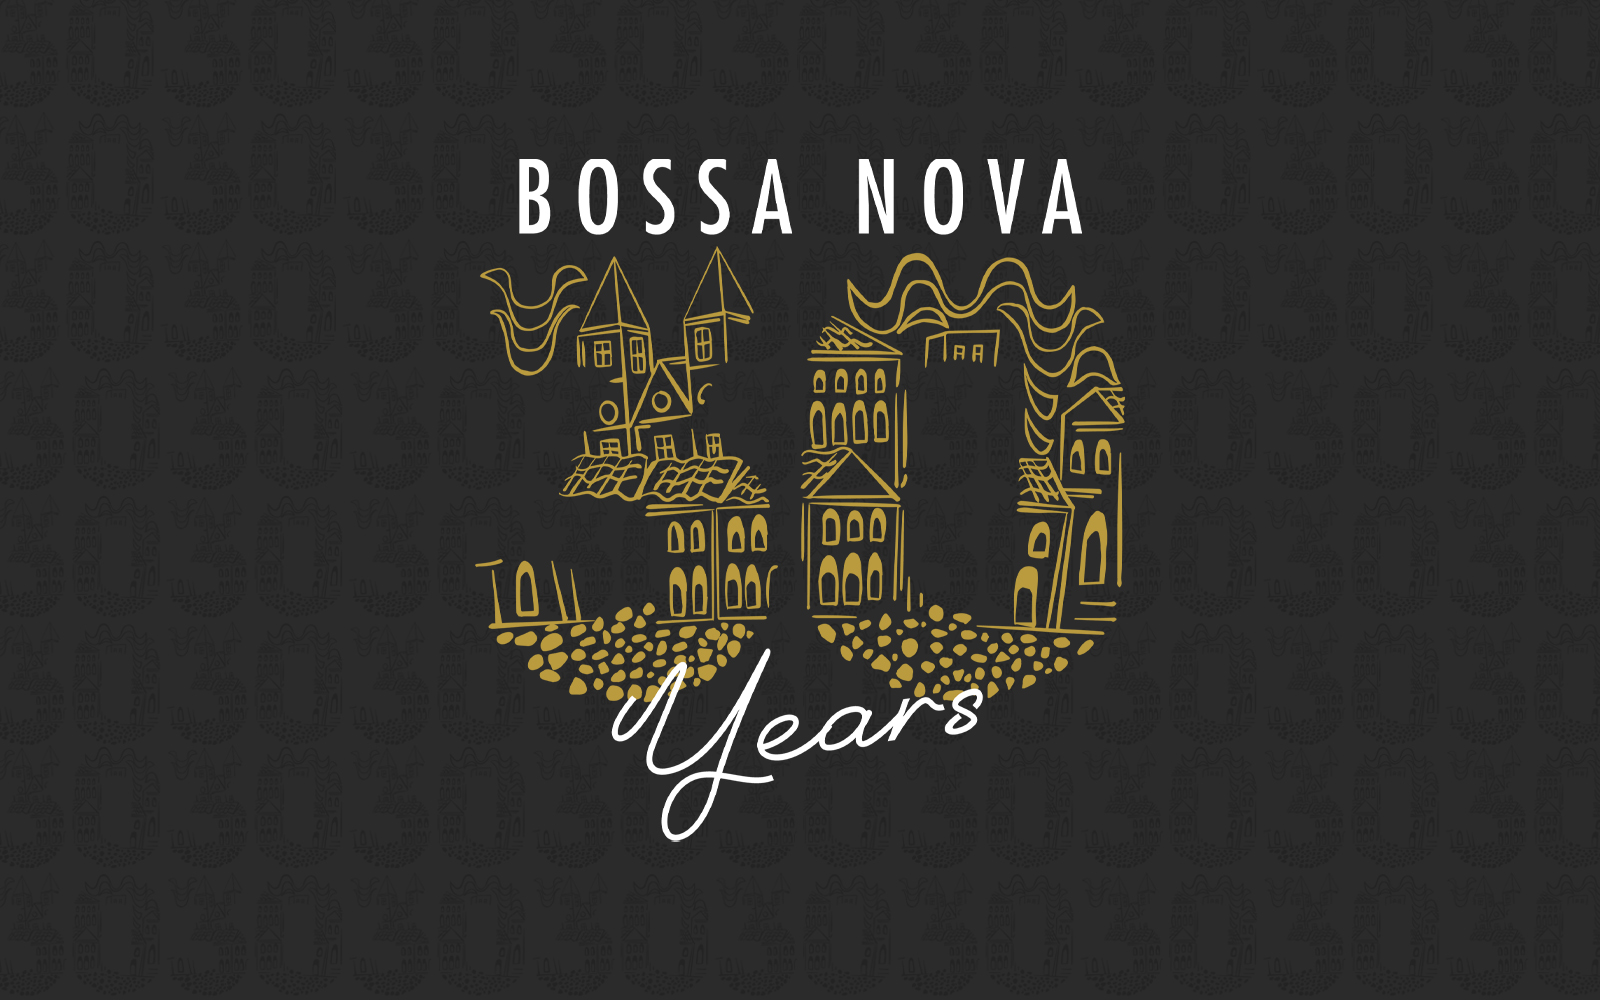 Bossa nova 30 years Anniversary